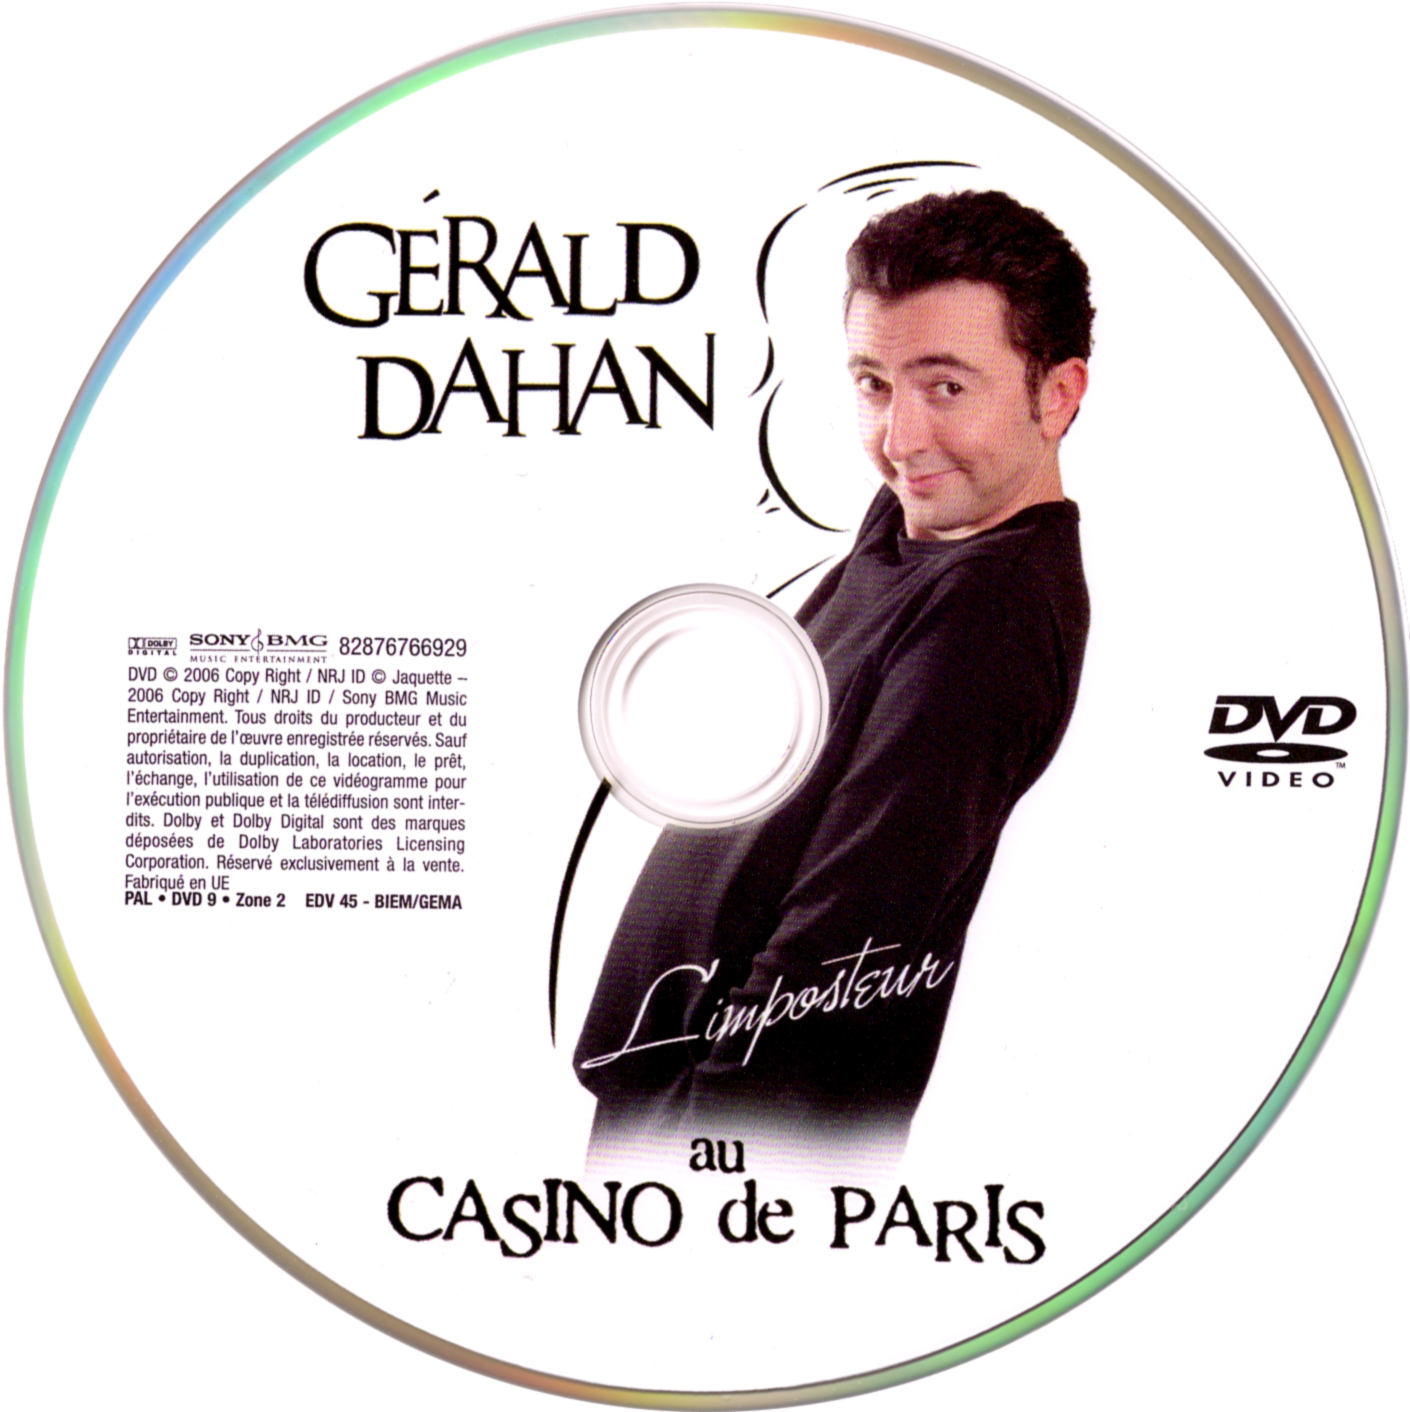 Grald Dahan au Casino de Paris